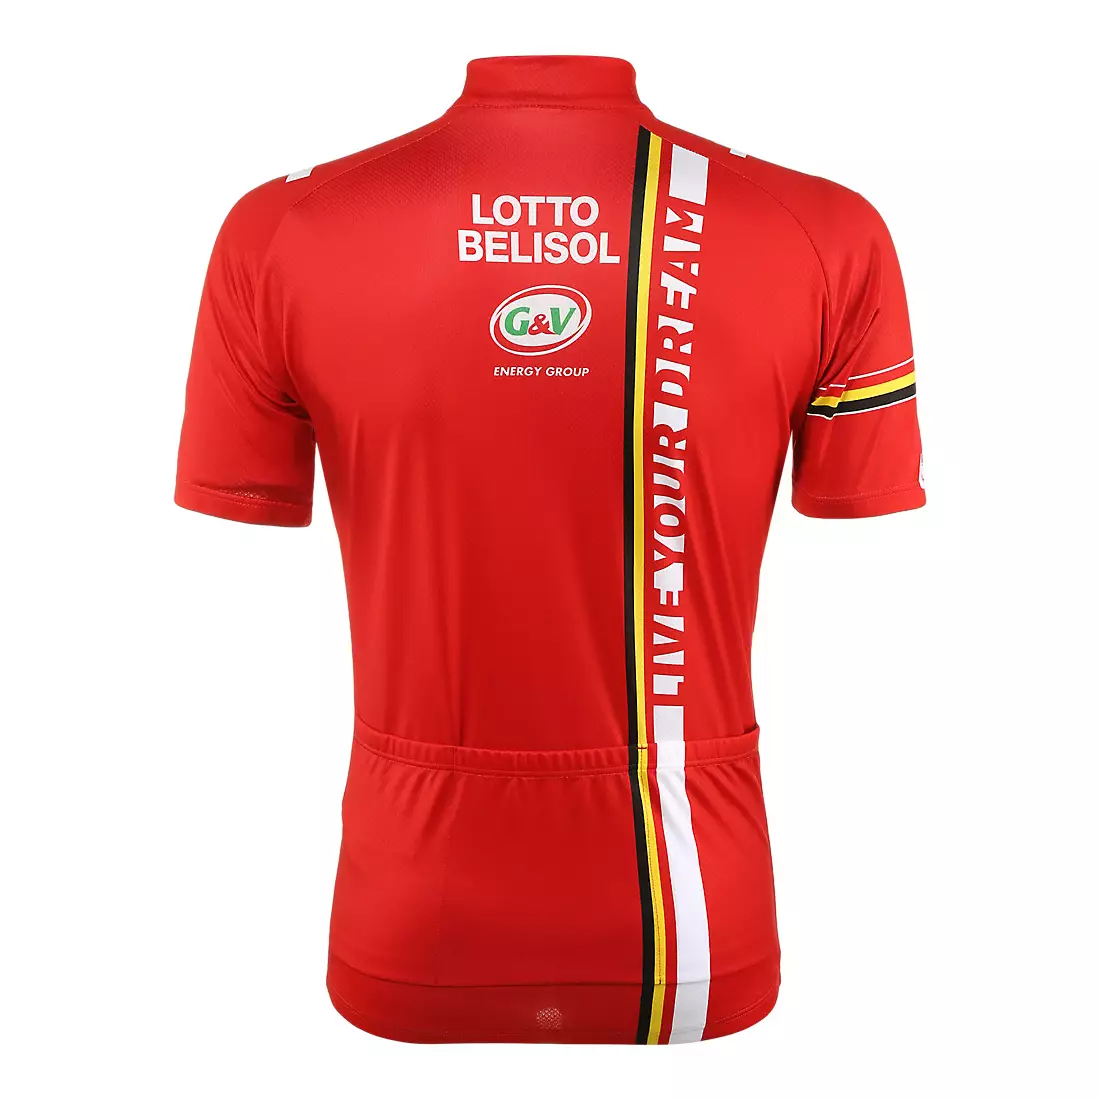 VERMARC - LOTTO BELISOL 2014 cyklistický dres, krátký zip